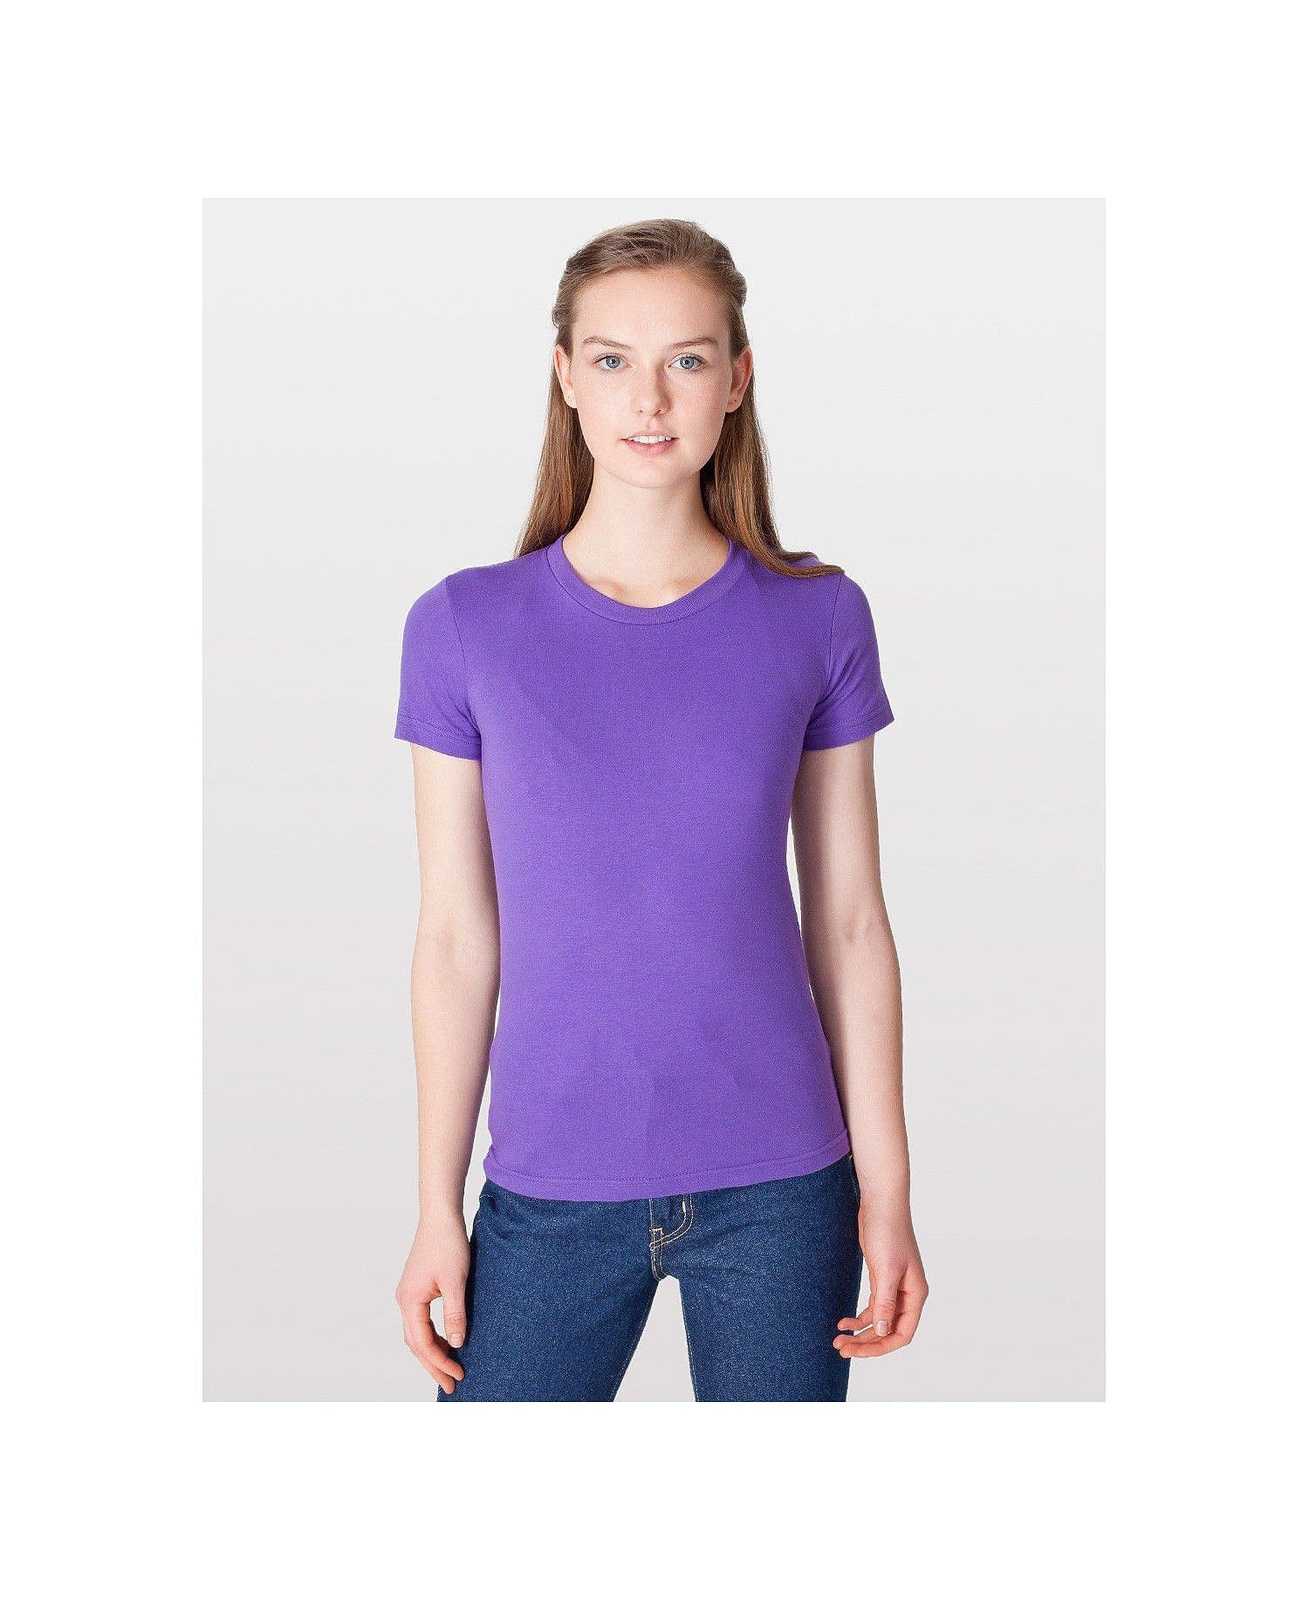 American Apparel 2102W Women's Fine Jersey T-Shirt - Purple - HIT a Double